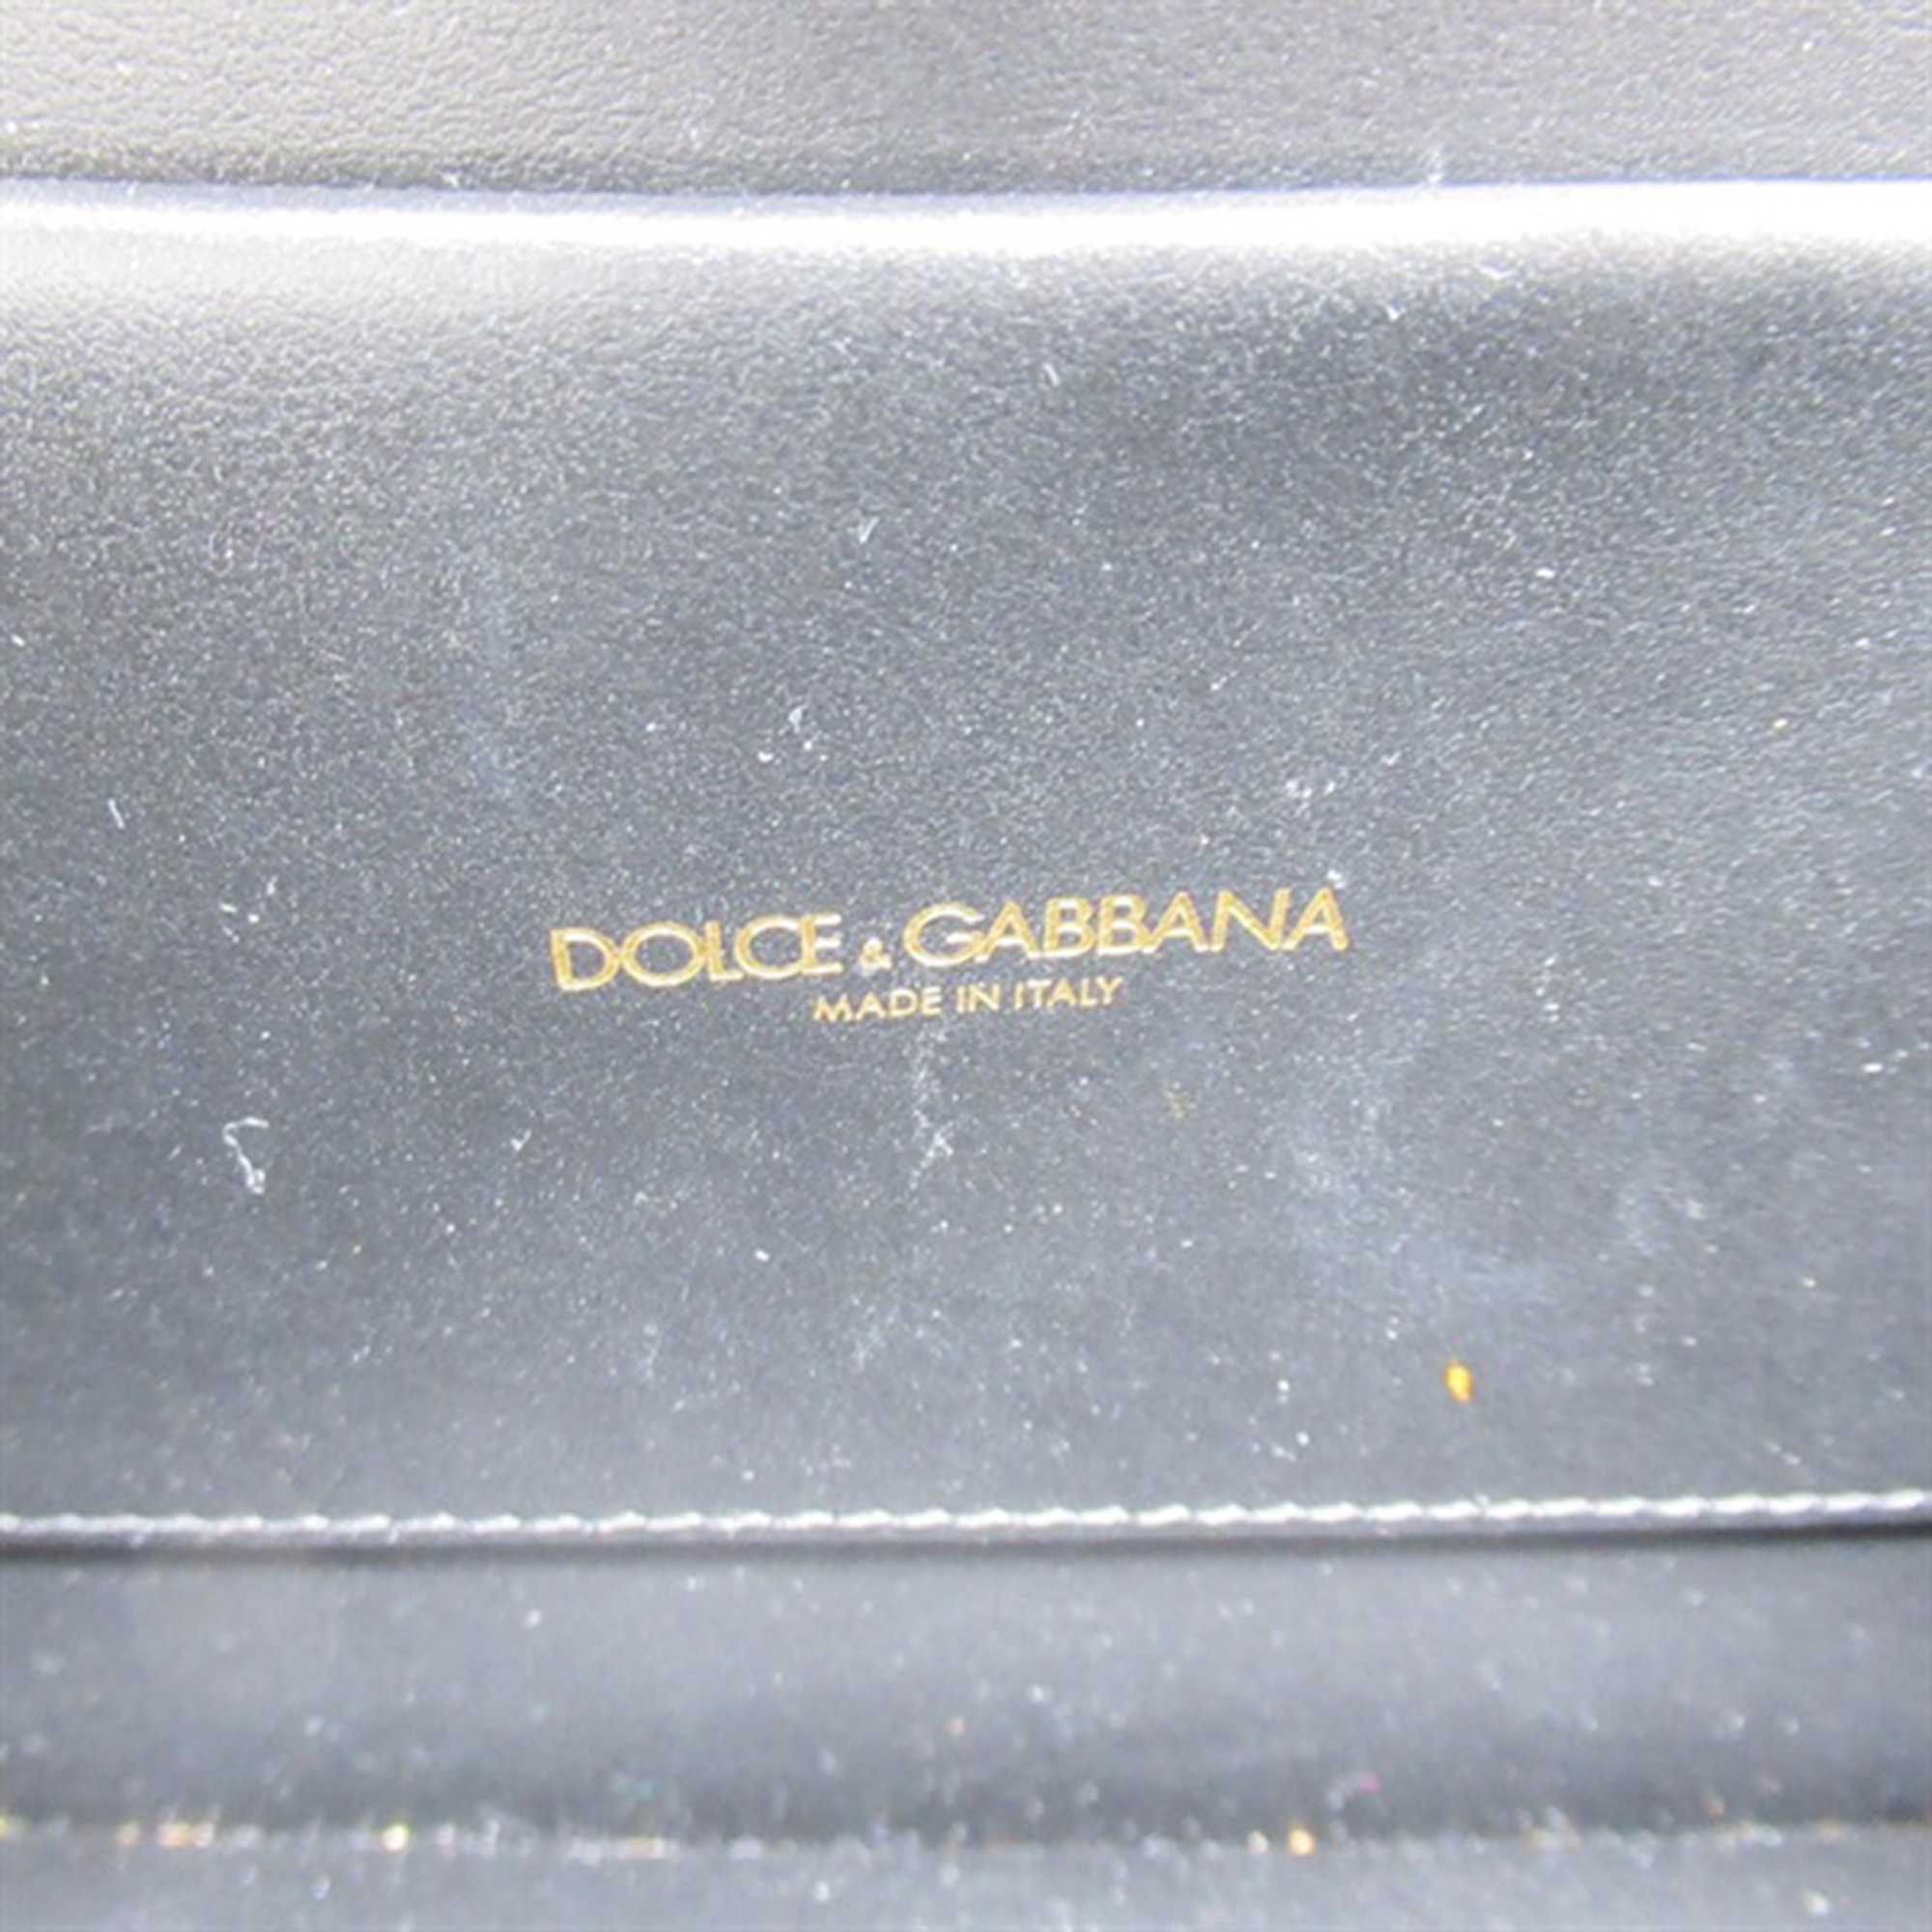 Dolce & Gabbana Gold Embossed Leather Devotion Shoulder Bag